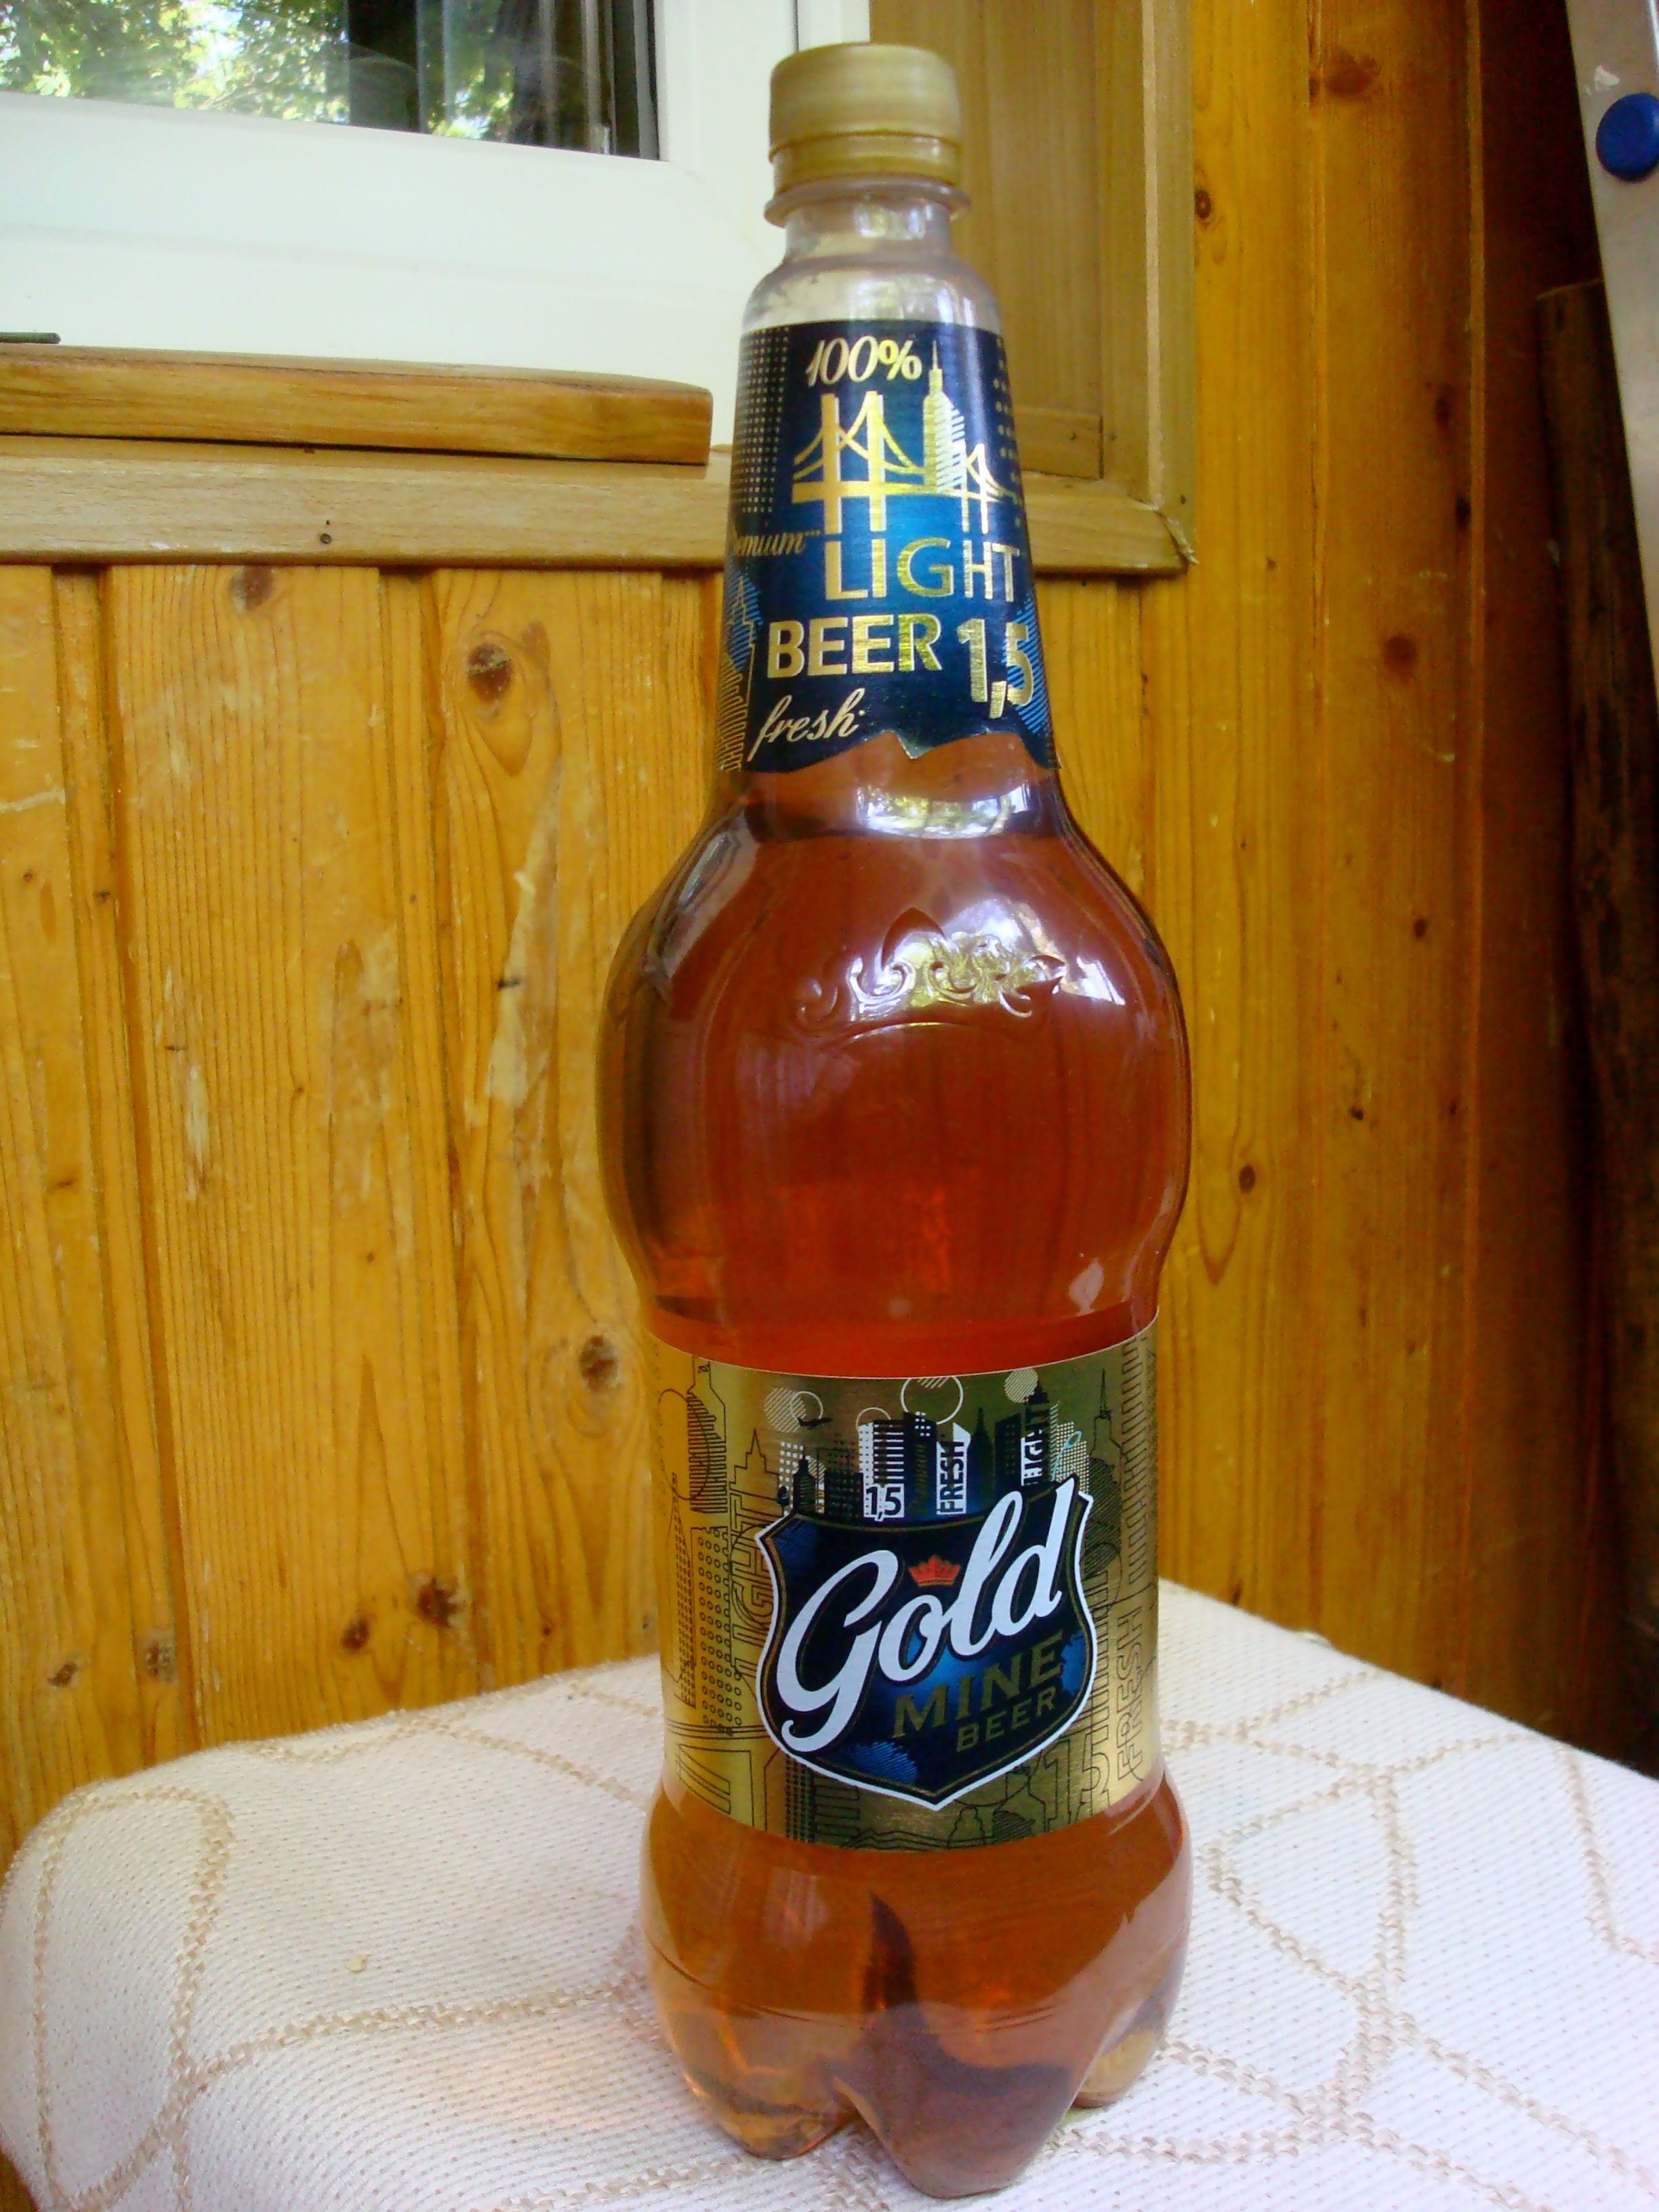 Beer 1.20 1. Пиво Gold mine Beer ячменное. Пиво Голд майн 1.3. Пиво Голд бир 1.5 крепость. Gold mine пиво 1.5.